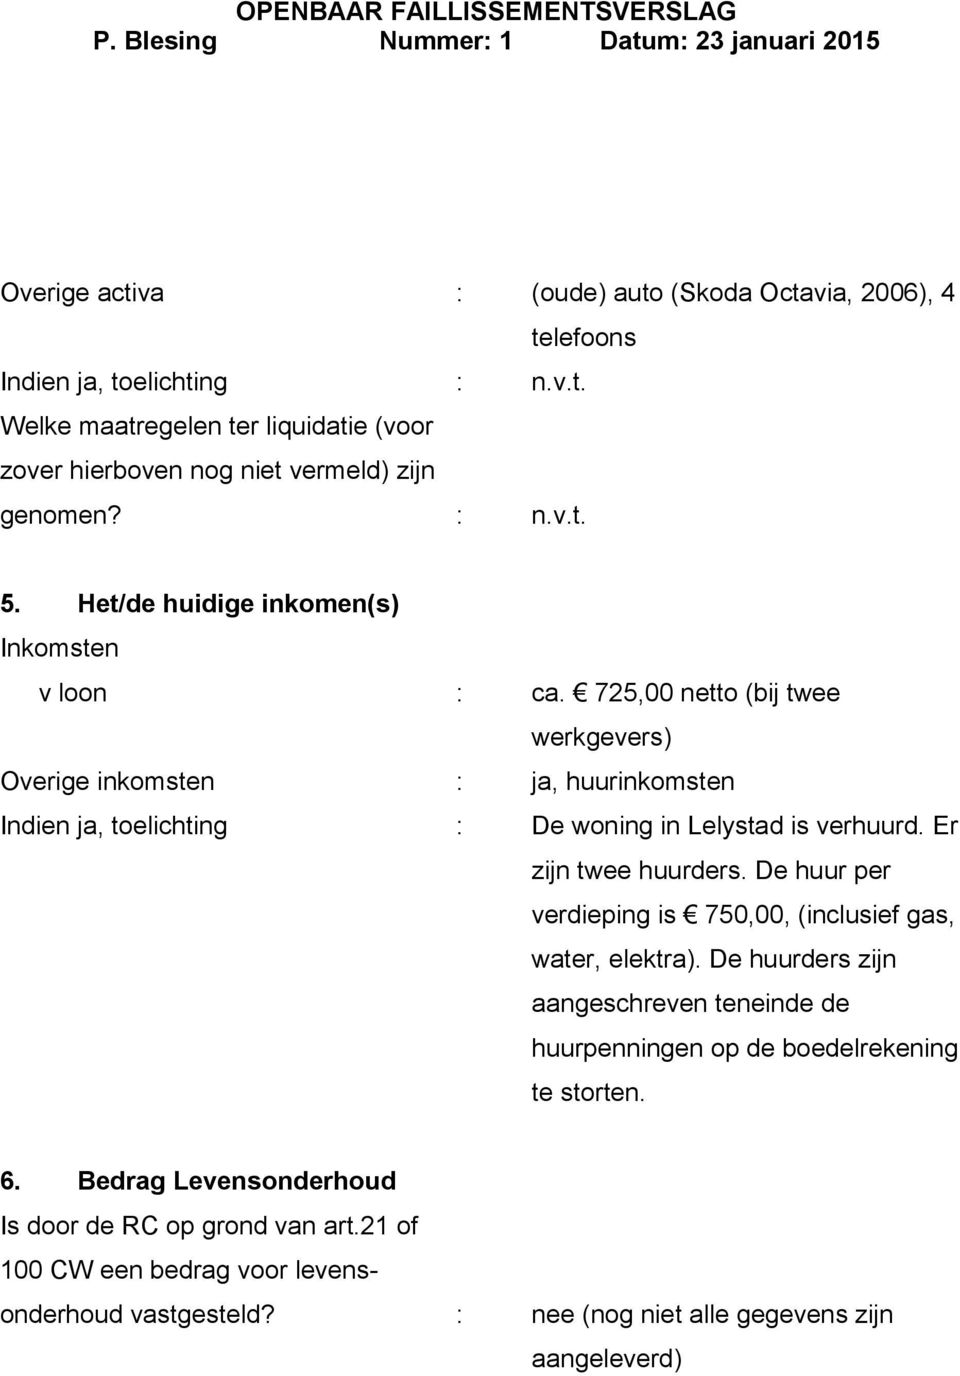 725,00 netto (bij twee werkgevers) Overige inkomsten : ja, huurinkomsten Indien ja, toelichting : De woning in Lelystad is verhuurd. Er zijn twee huurders.